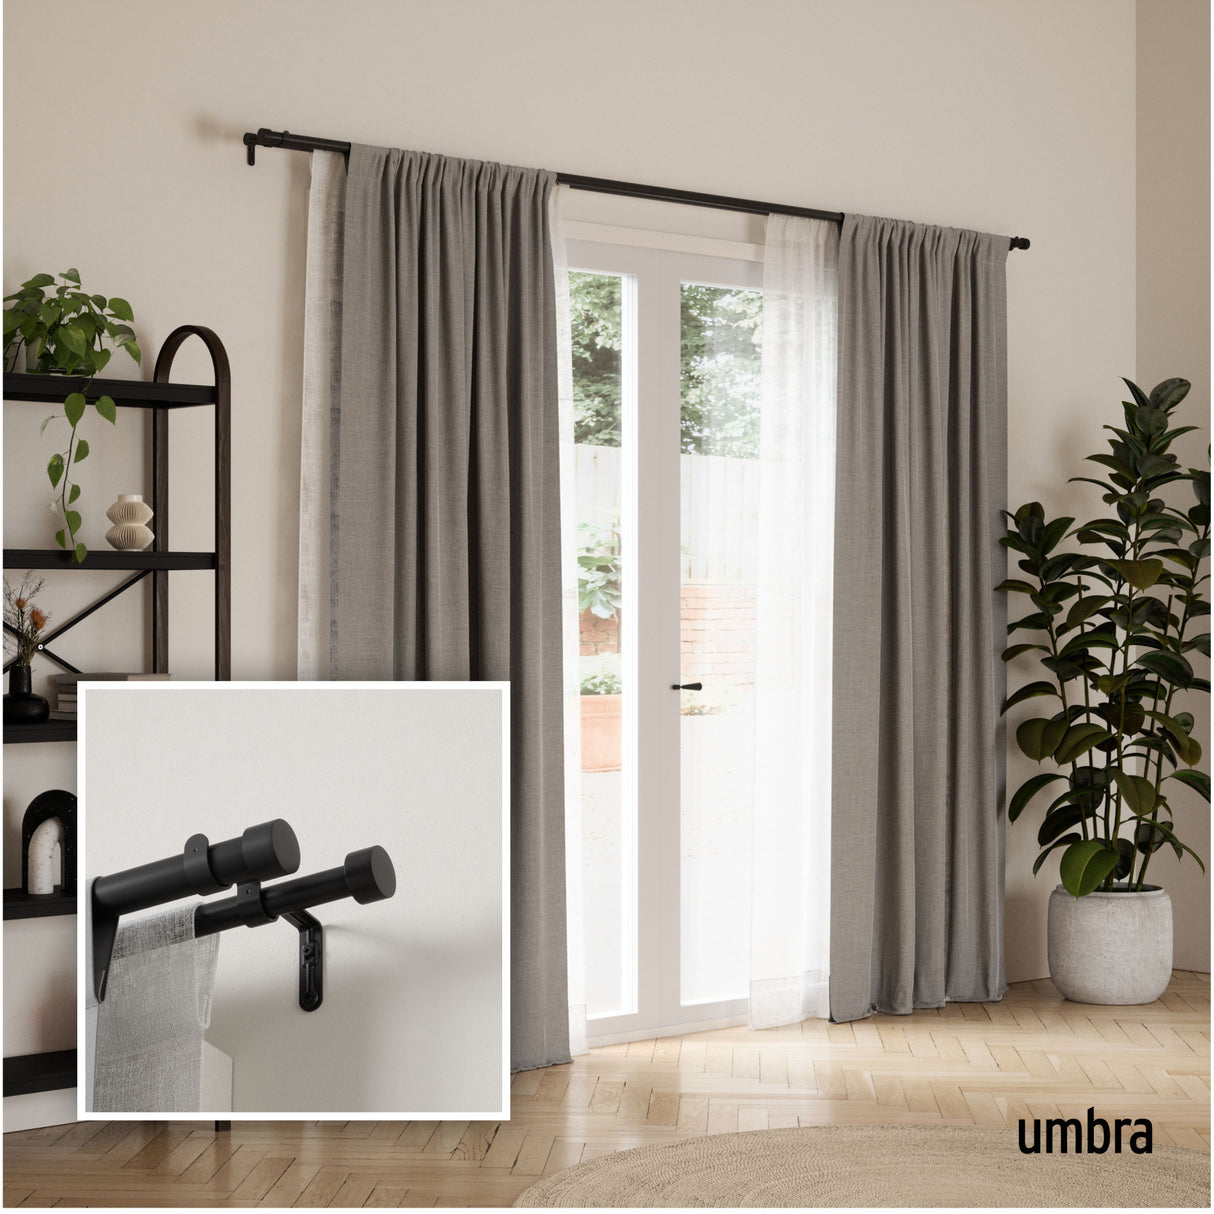 Double Curtain Rods | color: Brushed-Black | size: 36-66" (91-168 cm) | diameter: 1" (2.5 cm)